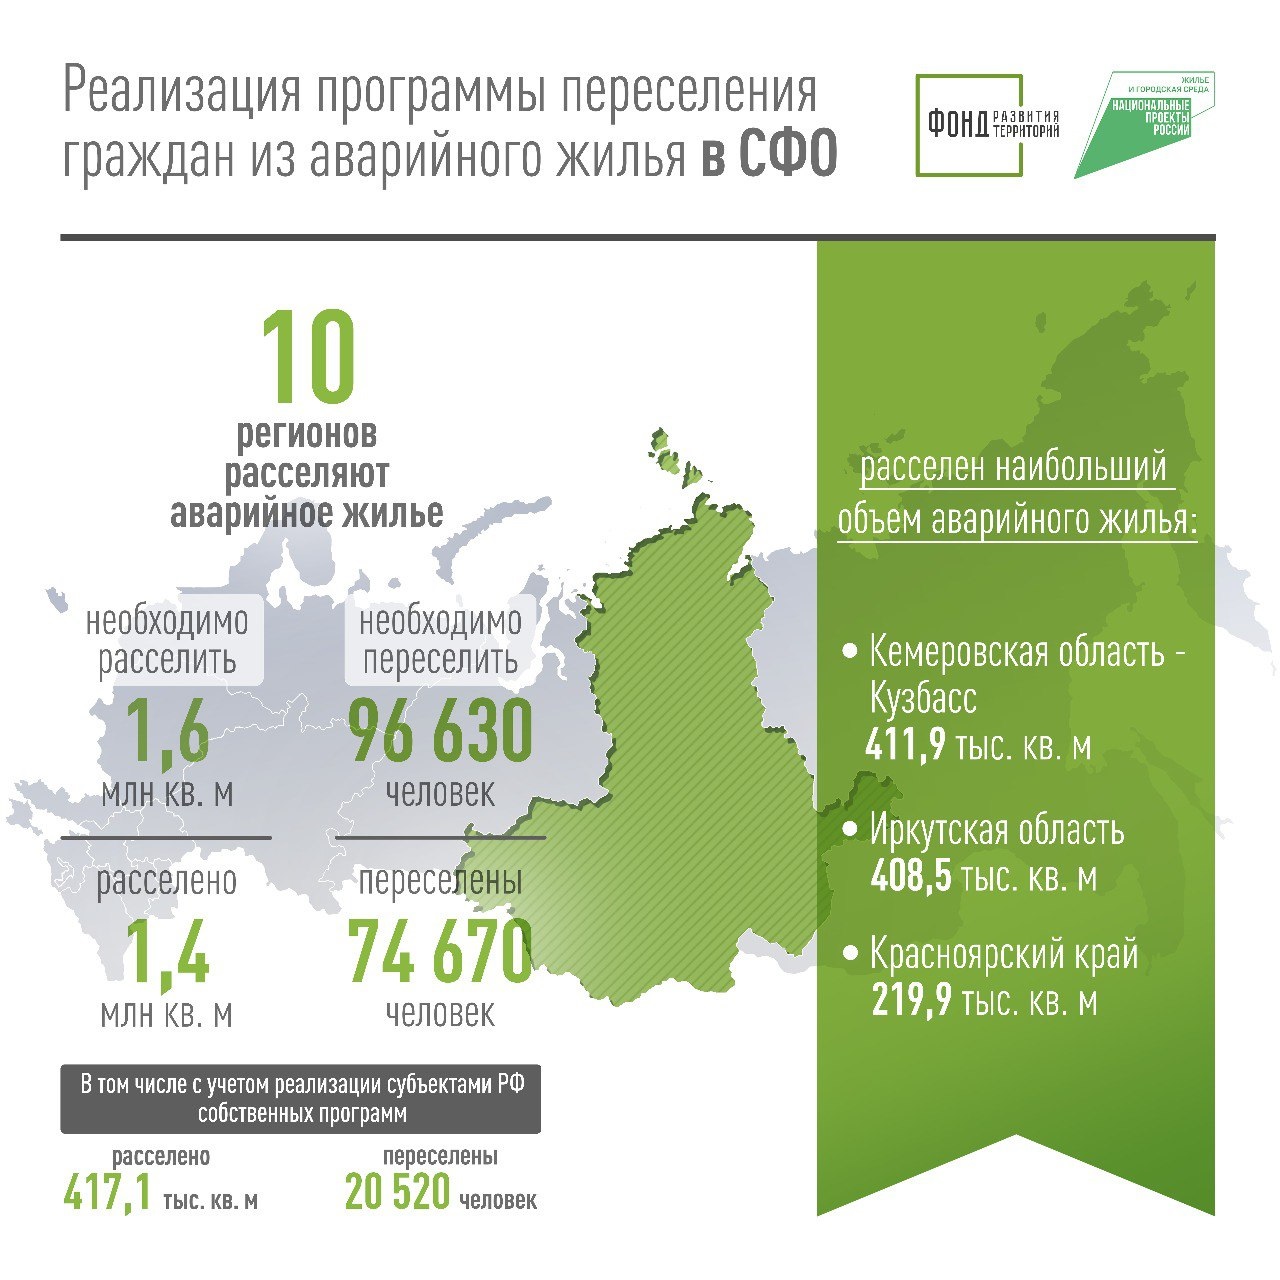 Почти 75 000 человек переселили из аварийного жилья в Сибирском федеральном округе